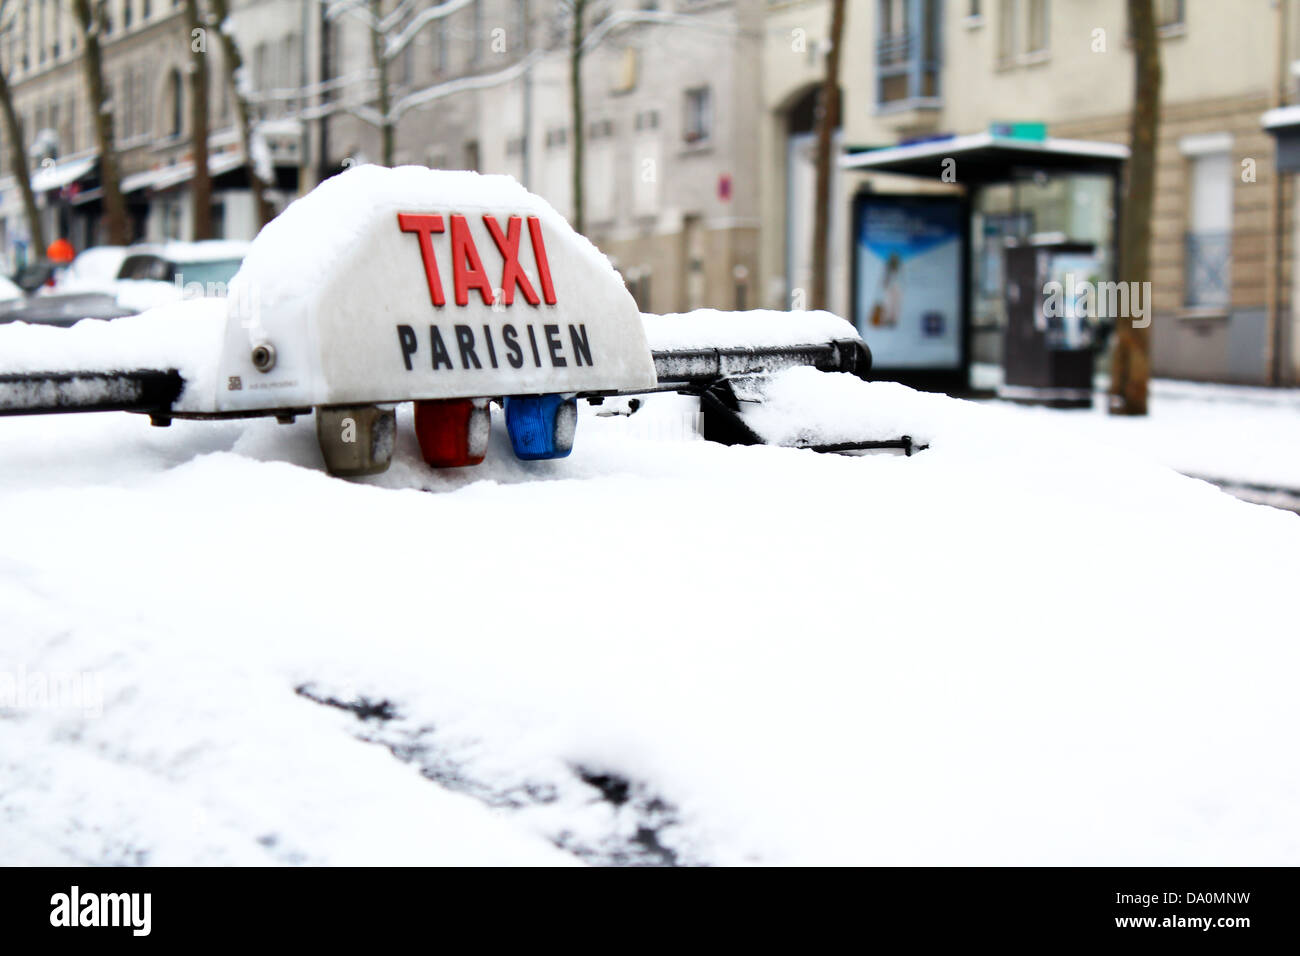 Seltenen Schneefall in Paris, Frankreich - 19. Januar 2013. Taxi-Dach unter der Schneedecke begraben. Stockfoto